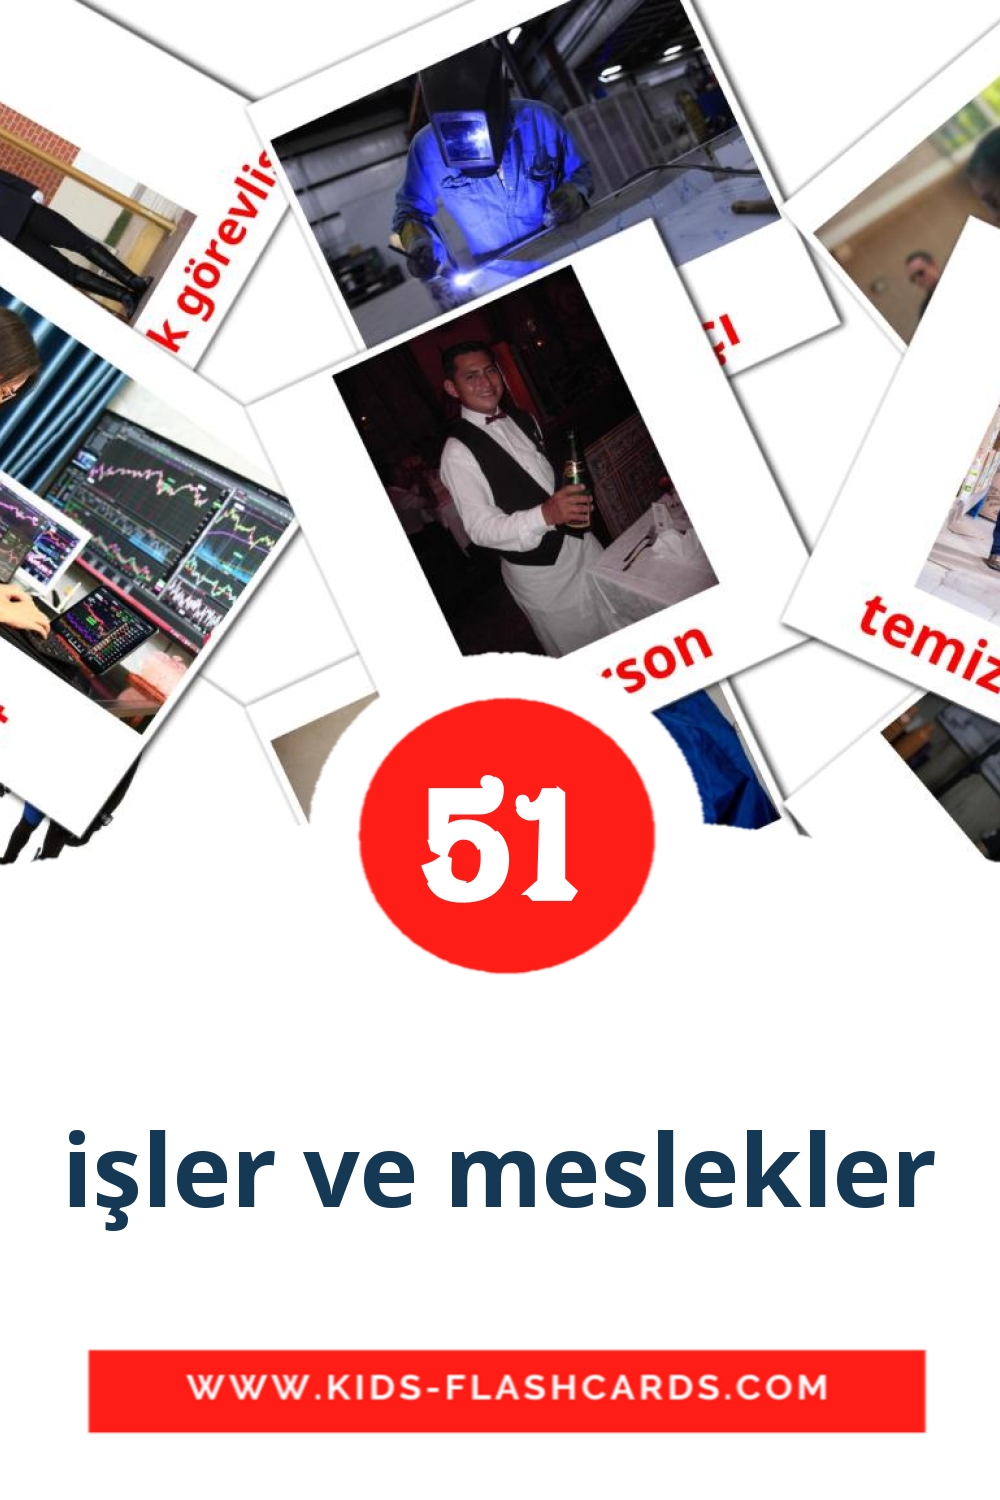 51 carte illustrate di işler ve meslekler per la scuola materna in turco